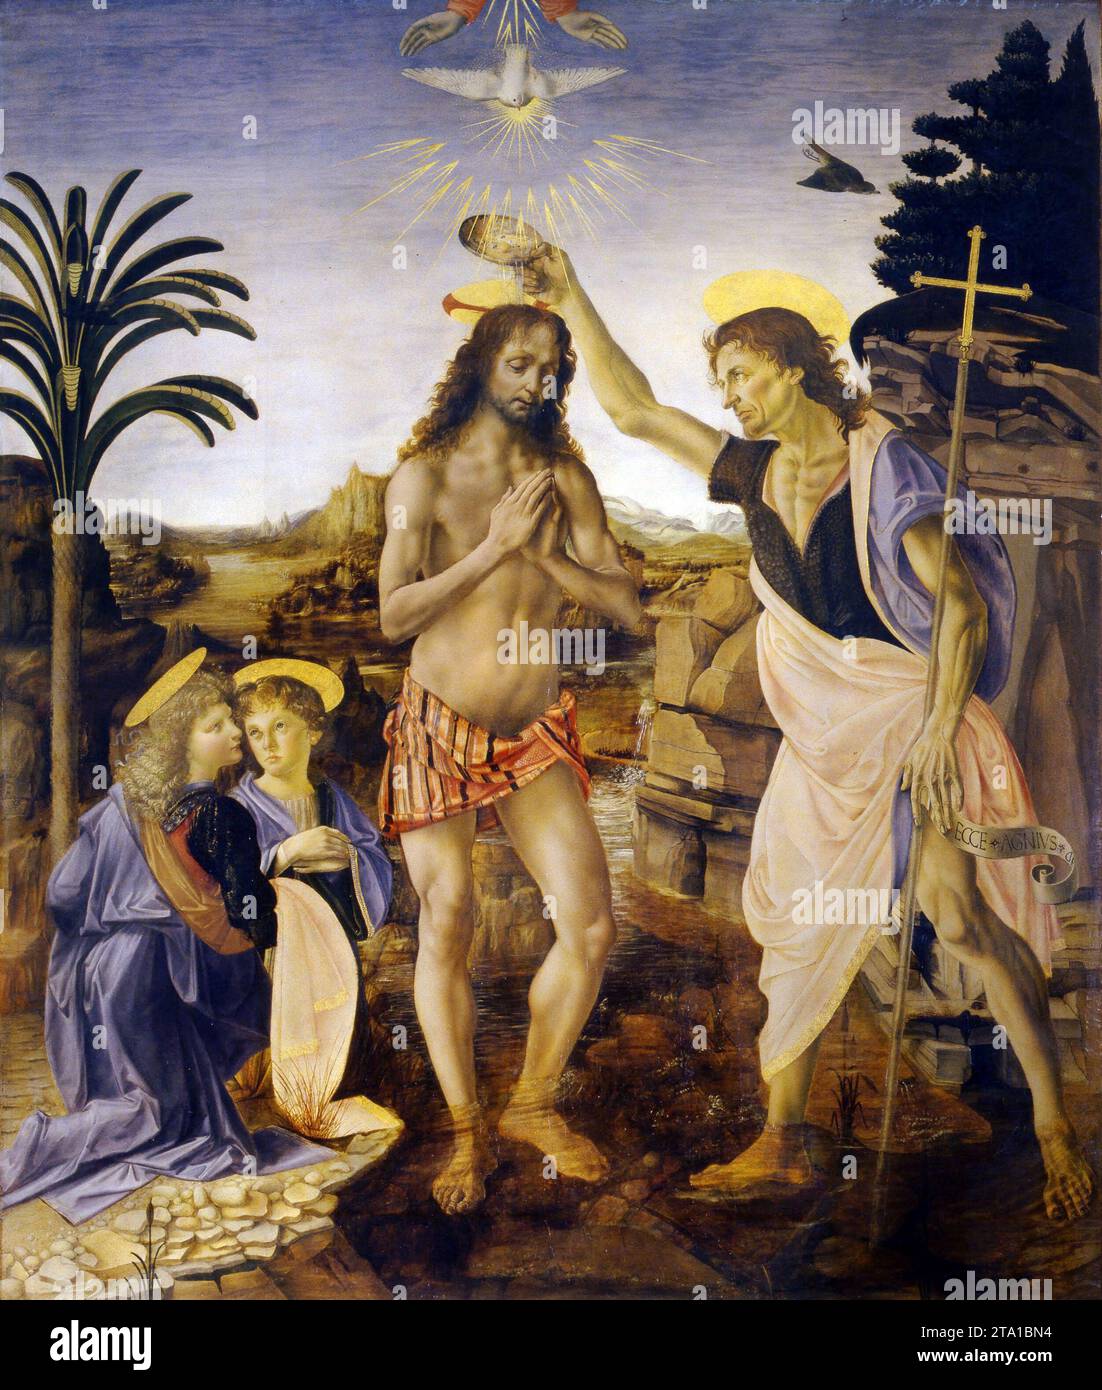 Verrocchio, dipinto di Leonardo da Vinci - Battesimo di Cristo, 1470 circa - arte religiosa Foto Stock